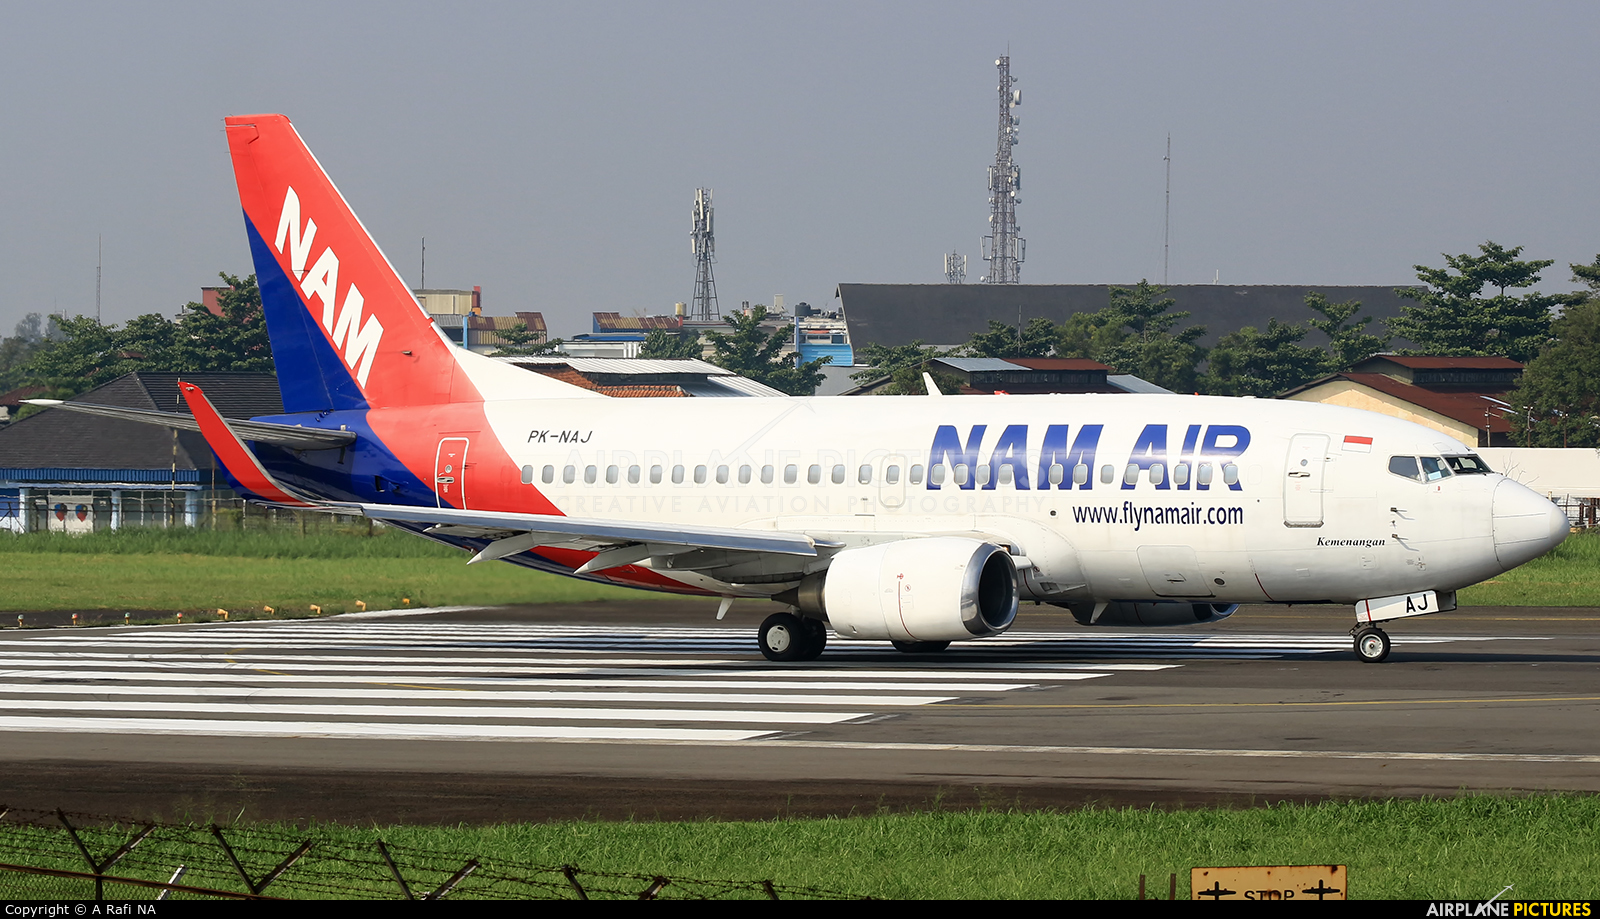 NAM Air PK-NAJ aircraft at Husein Sastranegara I'ntl Bandung